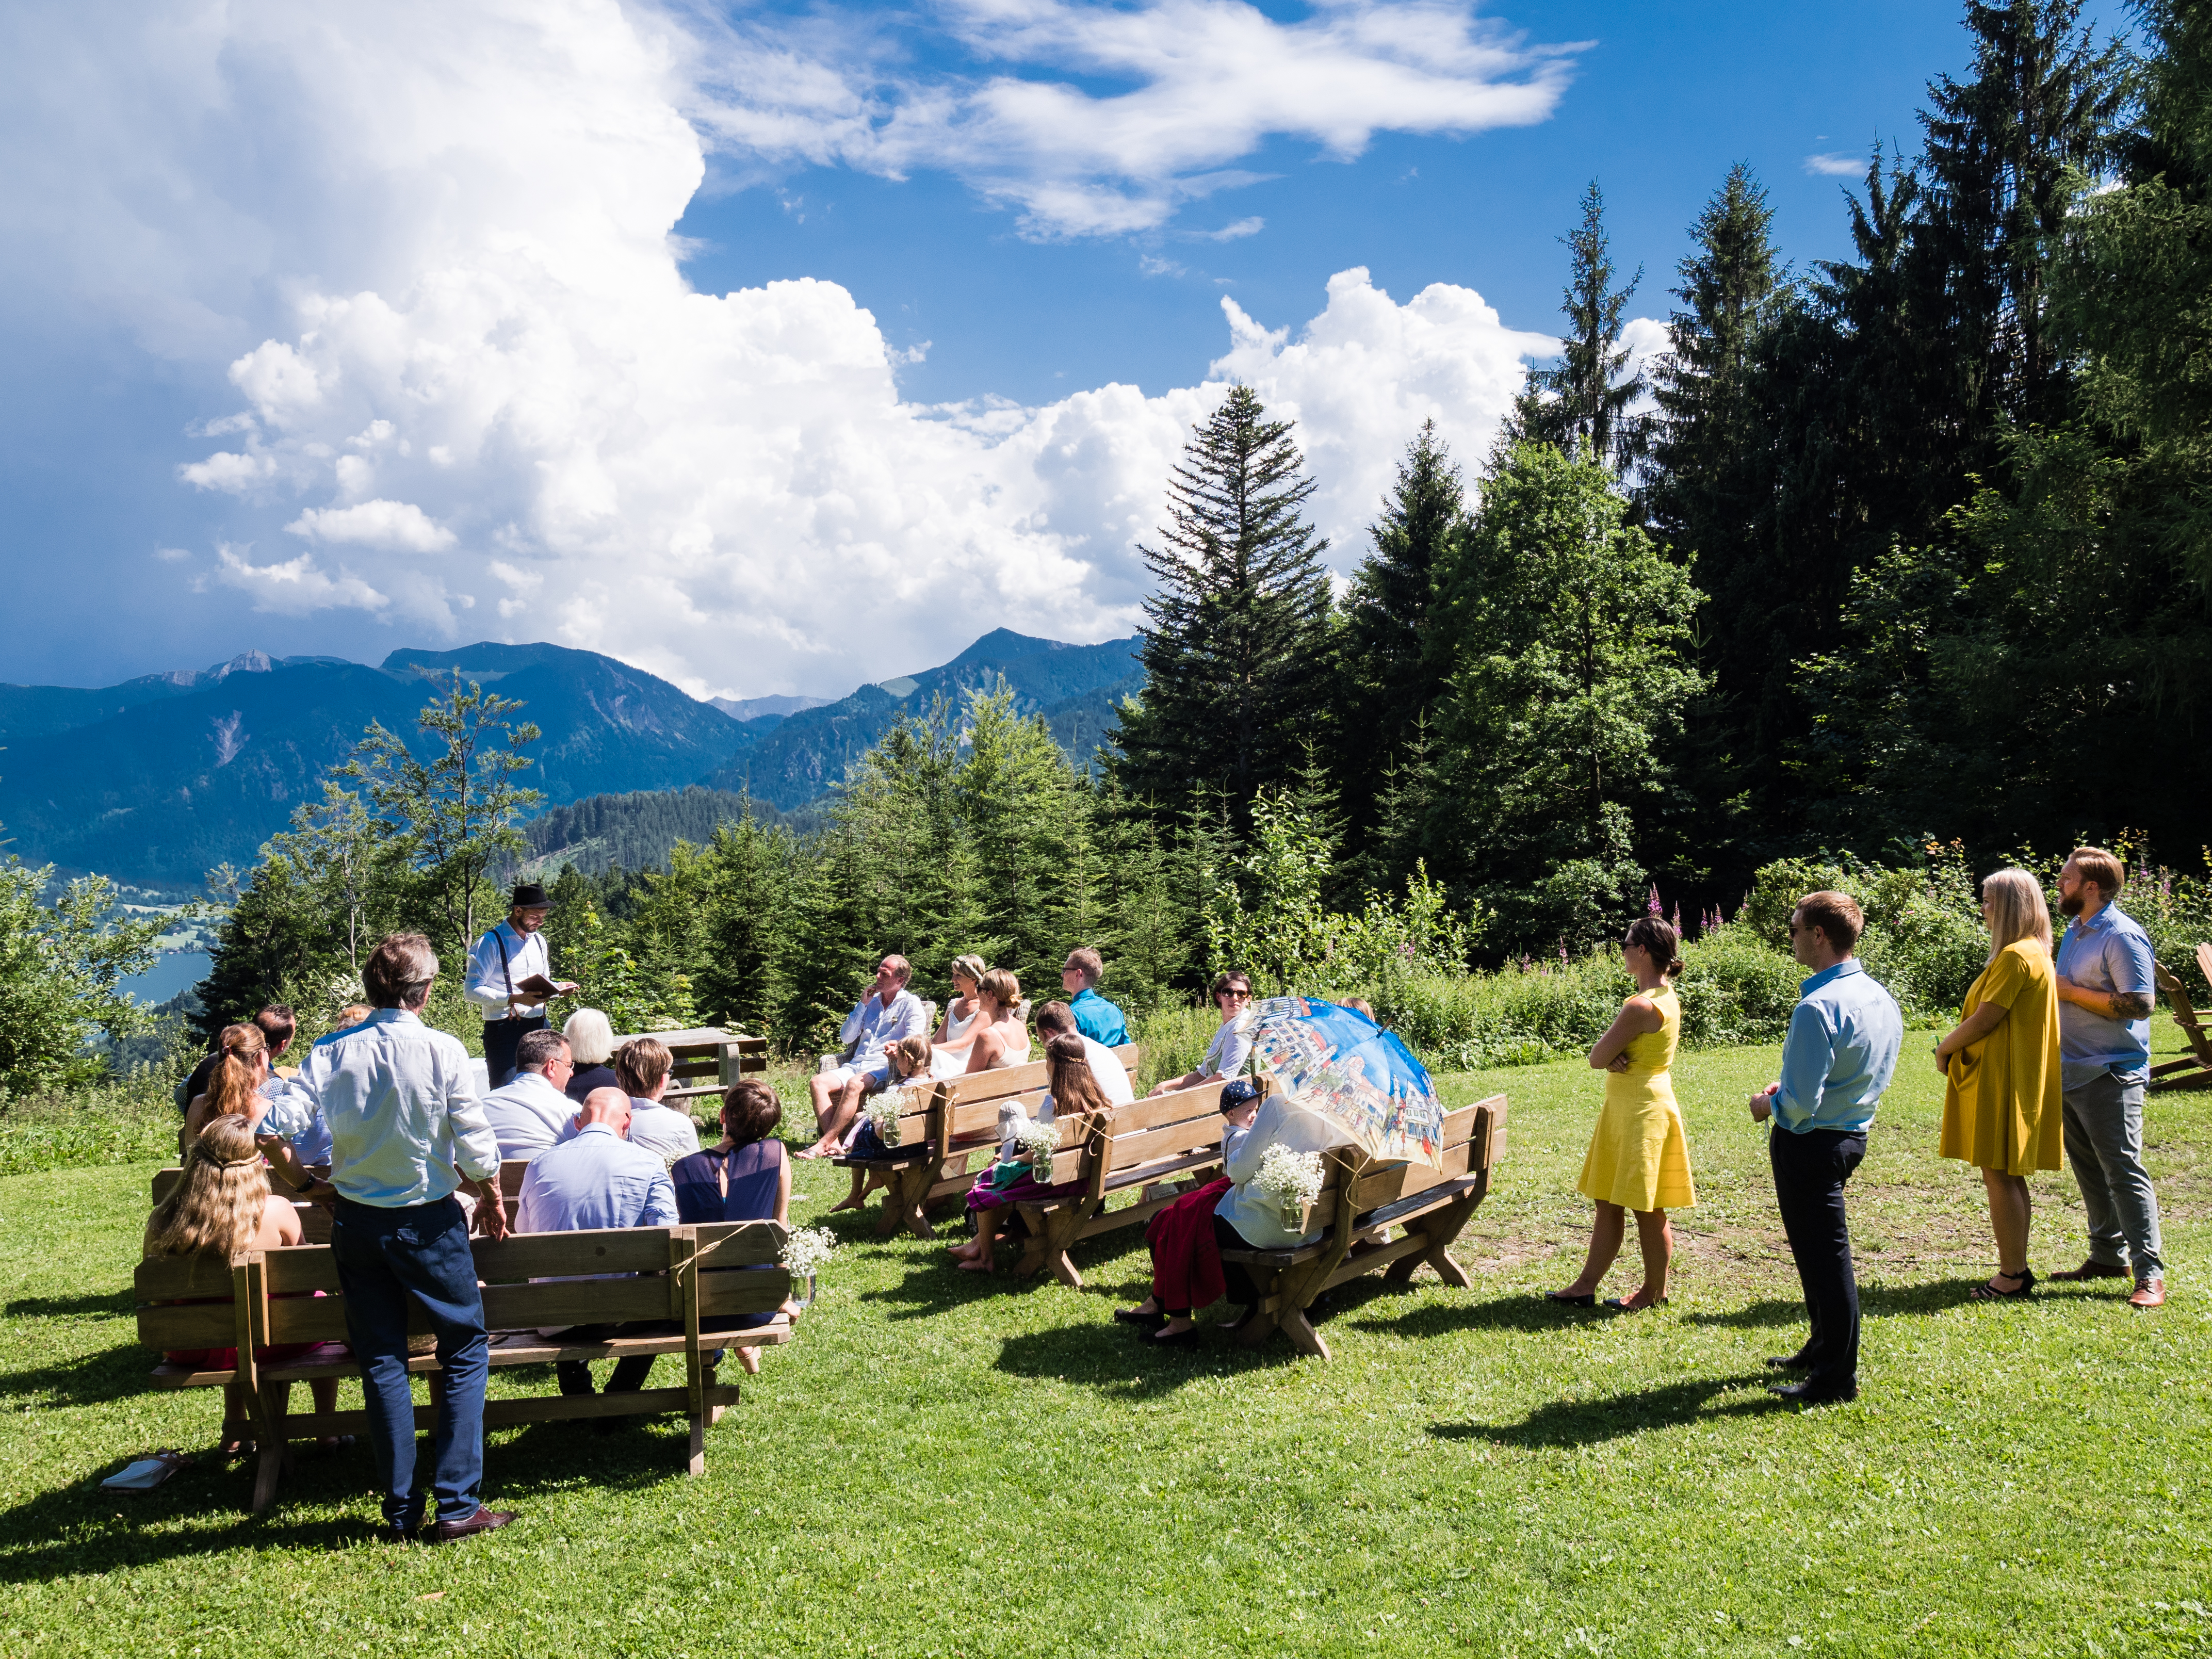 Freie Trauung in den Bergen | Zeremonie im Freien | Strauß & Fliege